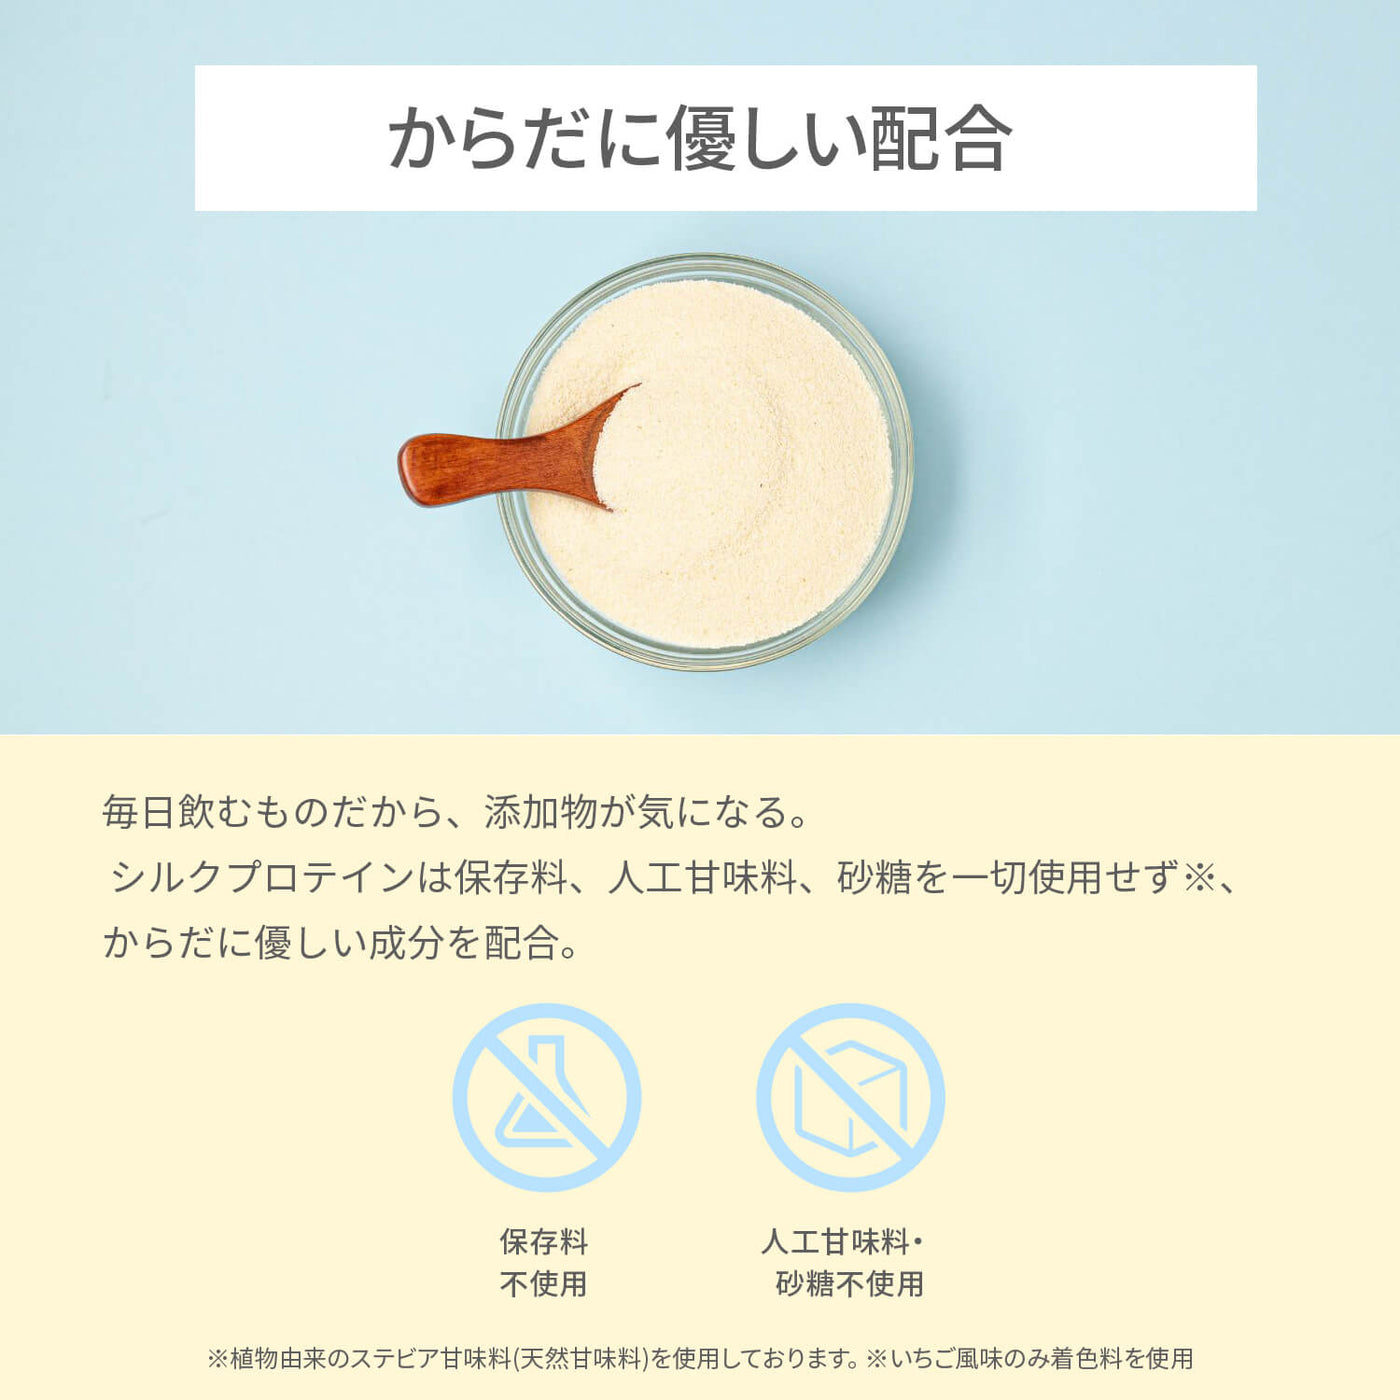 シルクプロテイン (コーヒー風味) (SP001)